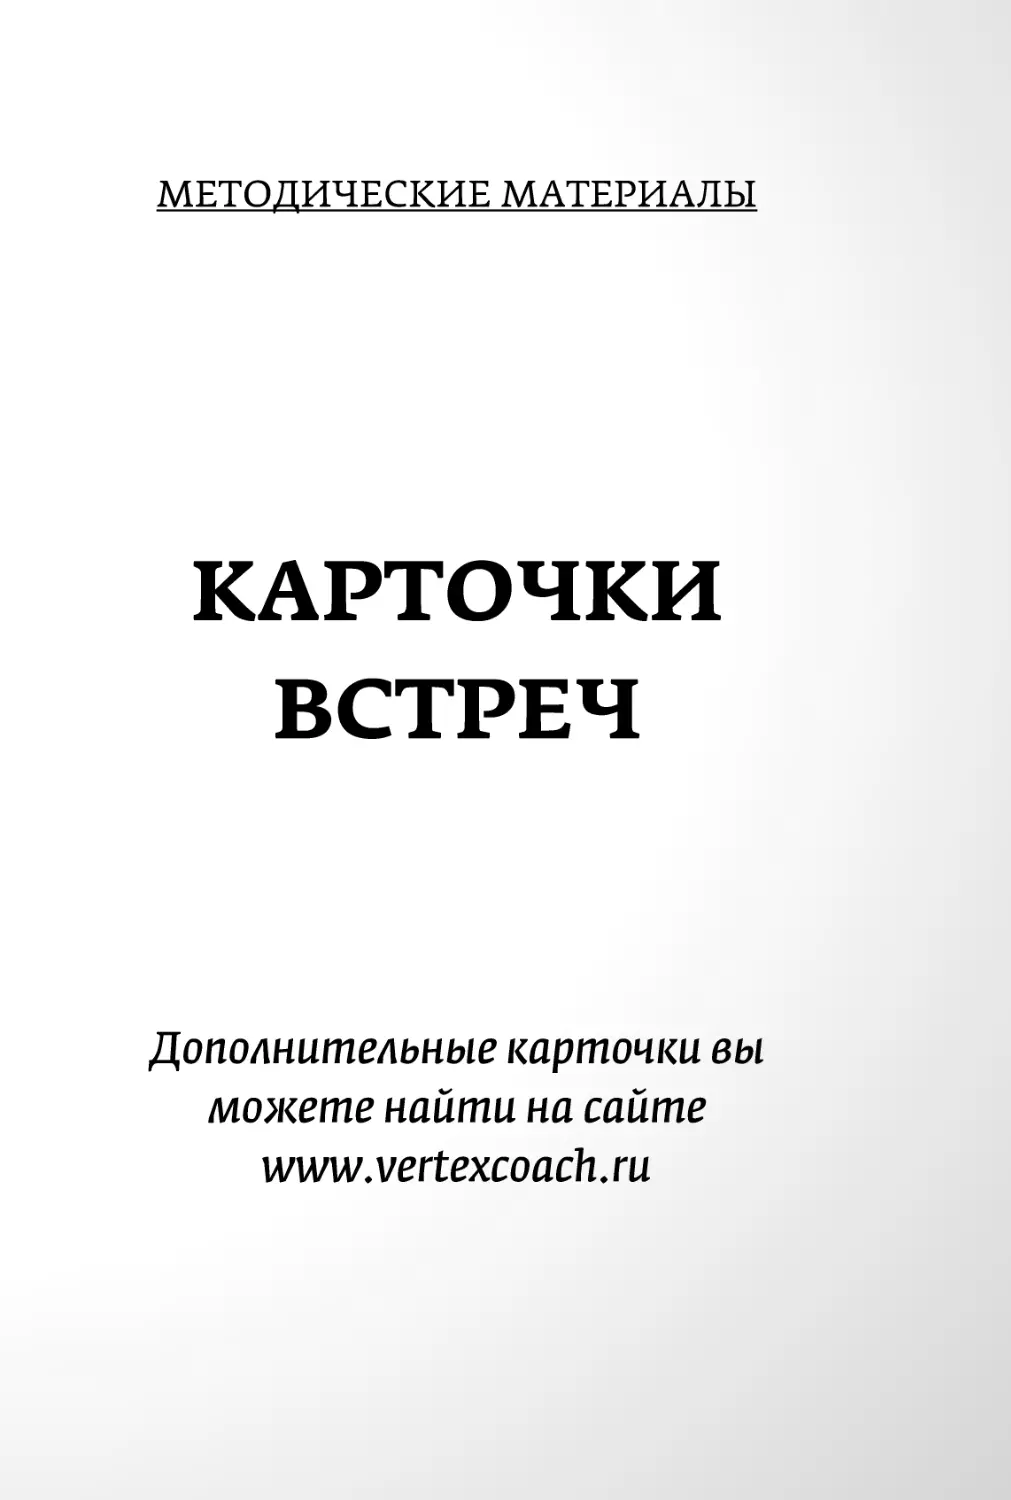 Sergey_Filippov_Dnevnik_samorazvitia_Evolyutsia_Vnutrennego_Sostoyania_193.pdf (p.193)